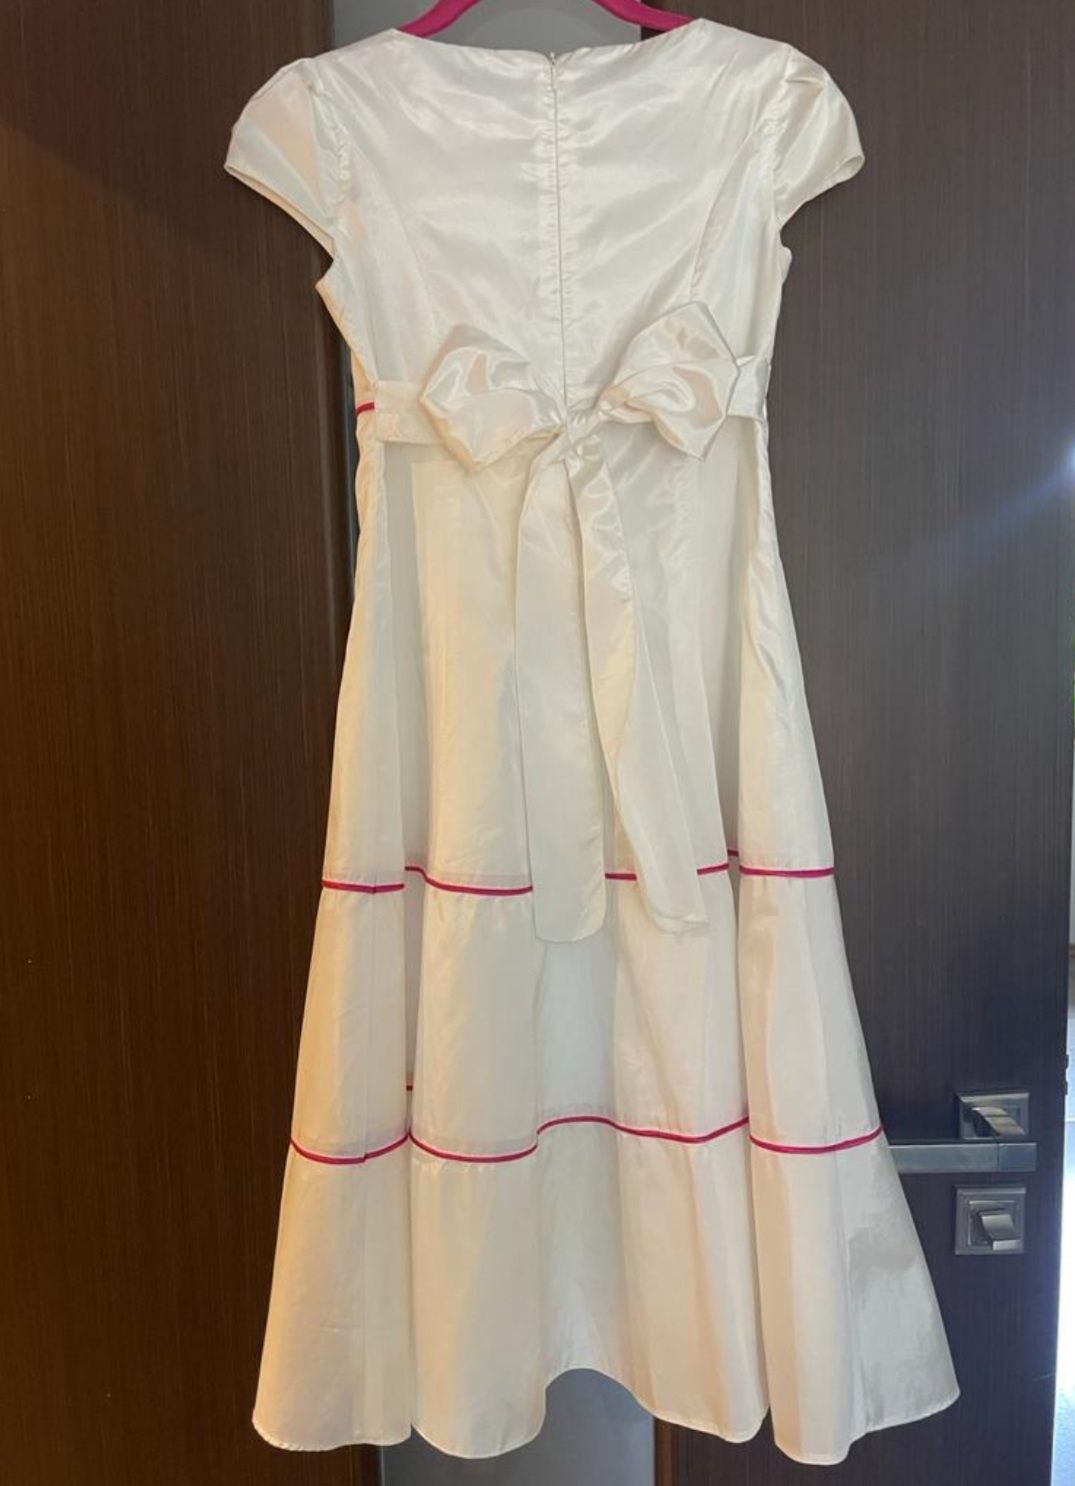 elegancka biała sukienka komunijna biała okazjonalna